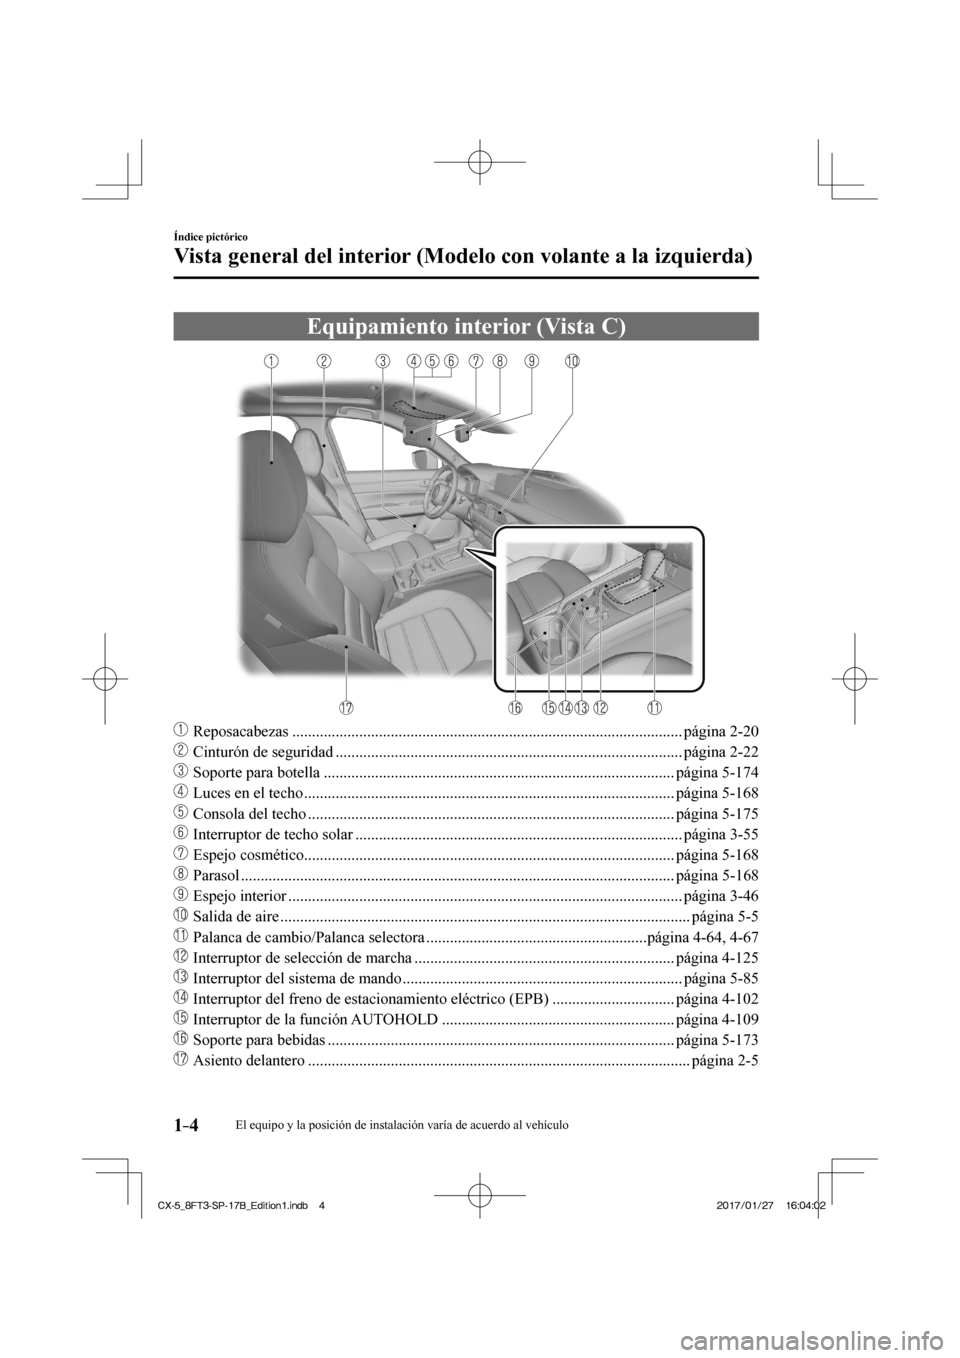 MAZDA MODEL CX-5 2018  Manual del propietario (in Spanish) 1–4
Índice pictórico
Vista general del interior (Modelo con volante a la izquierda)
 Equipamiento interior (Vista C)
    
���
 Reposacabezas ....................................................